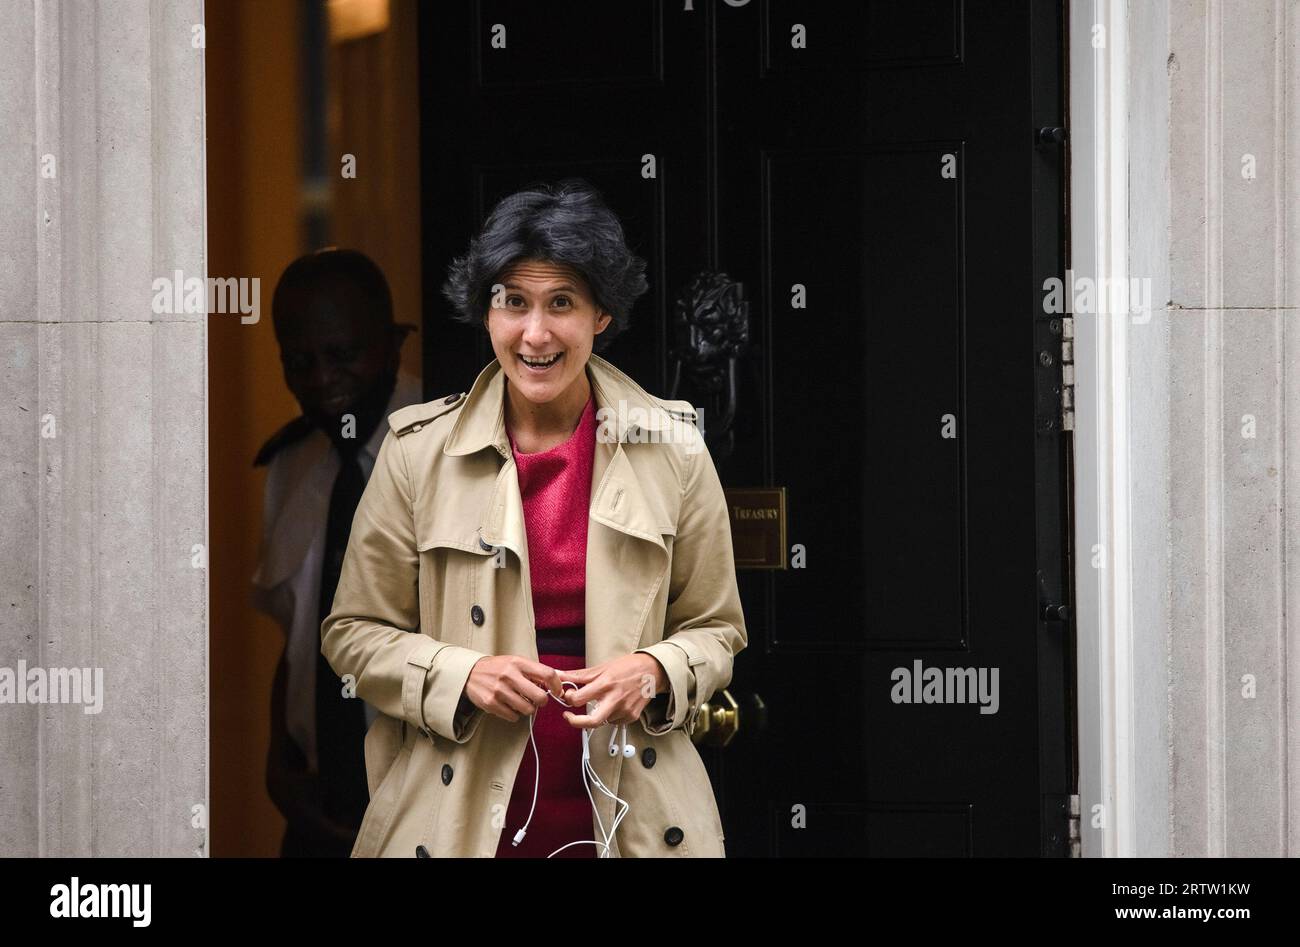 Cat Little - Chef de la fonction des finances publiques et deuxième Secrétaire permanent - départ du 10 Downing Street, juillet 2021 Banque D'Images